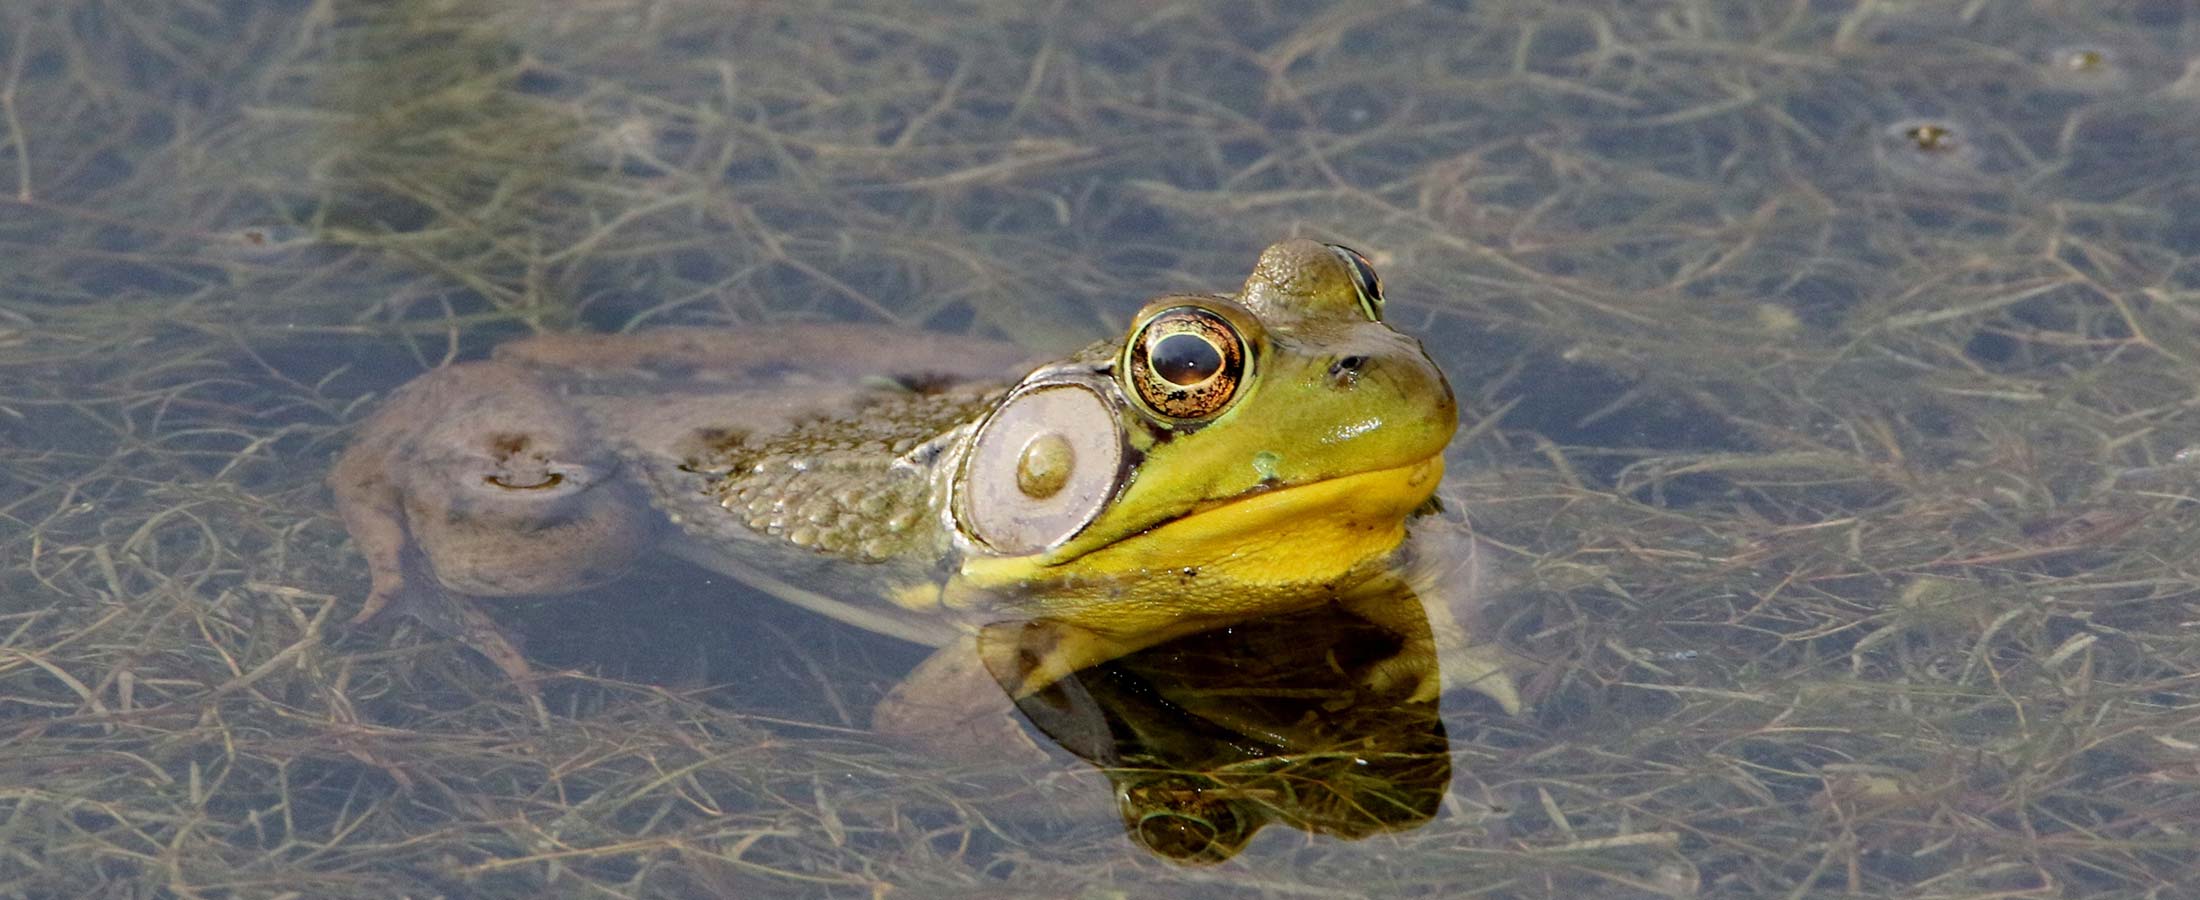 Bullfrog in wetland pond at Walnut Woods Metro Park